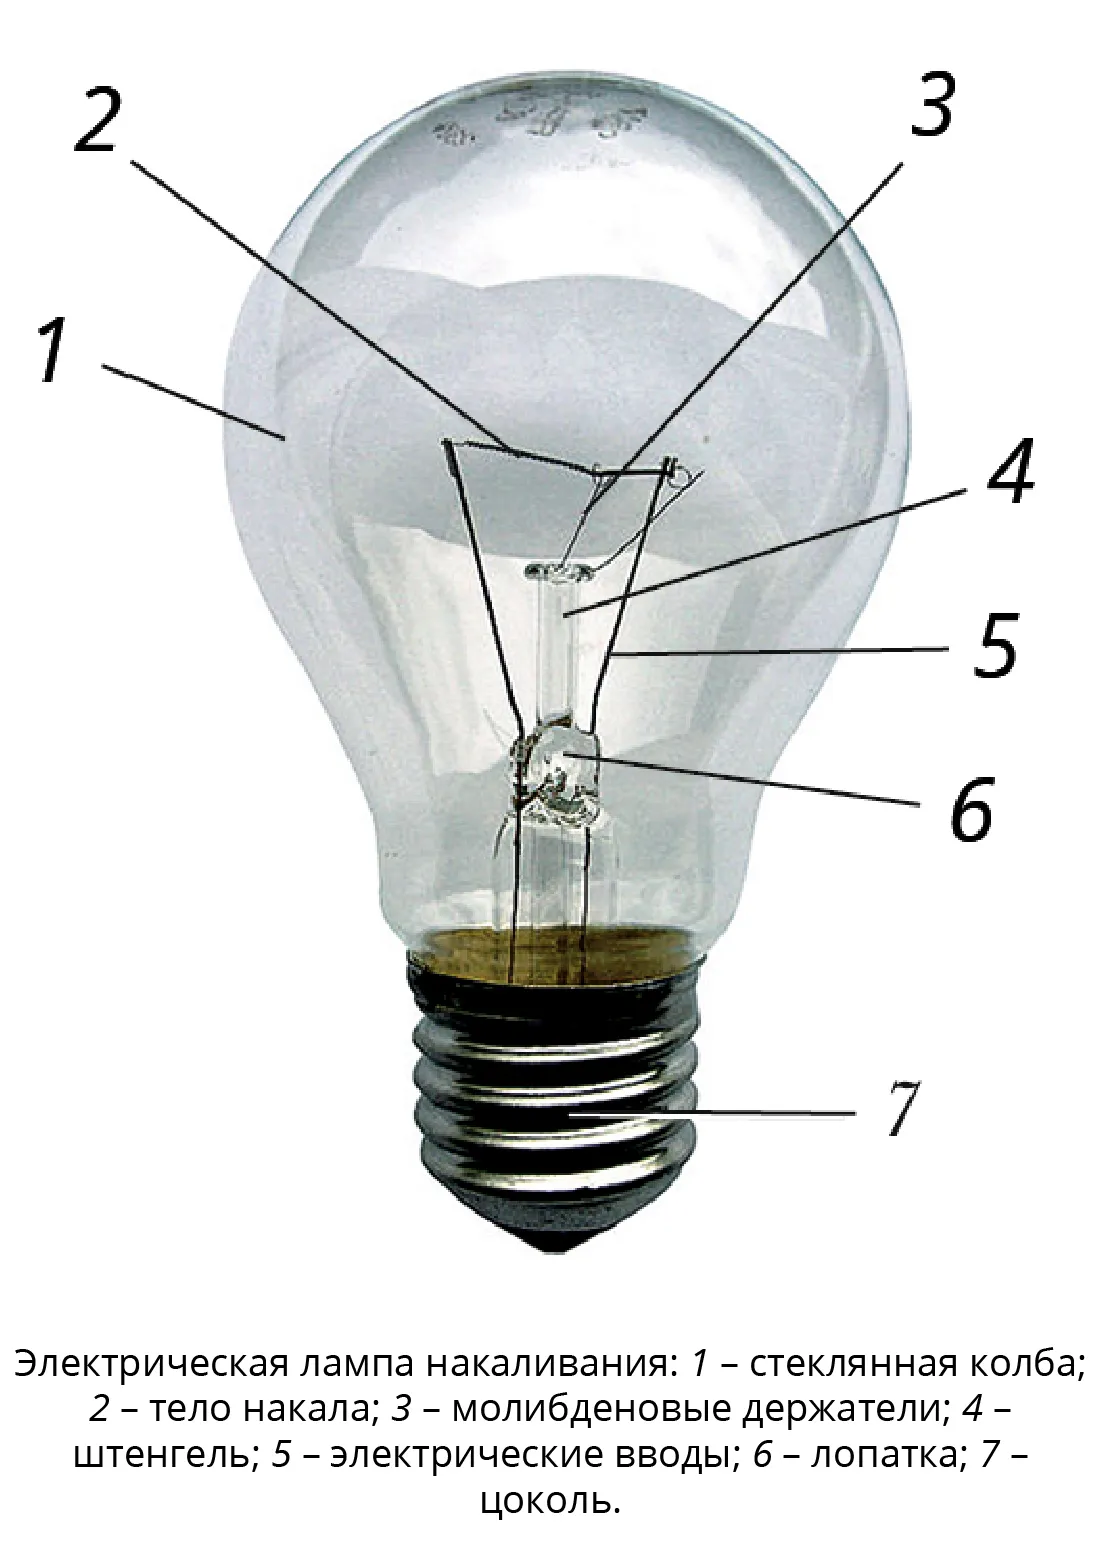 Лампа электрическая накаливания 2ш22